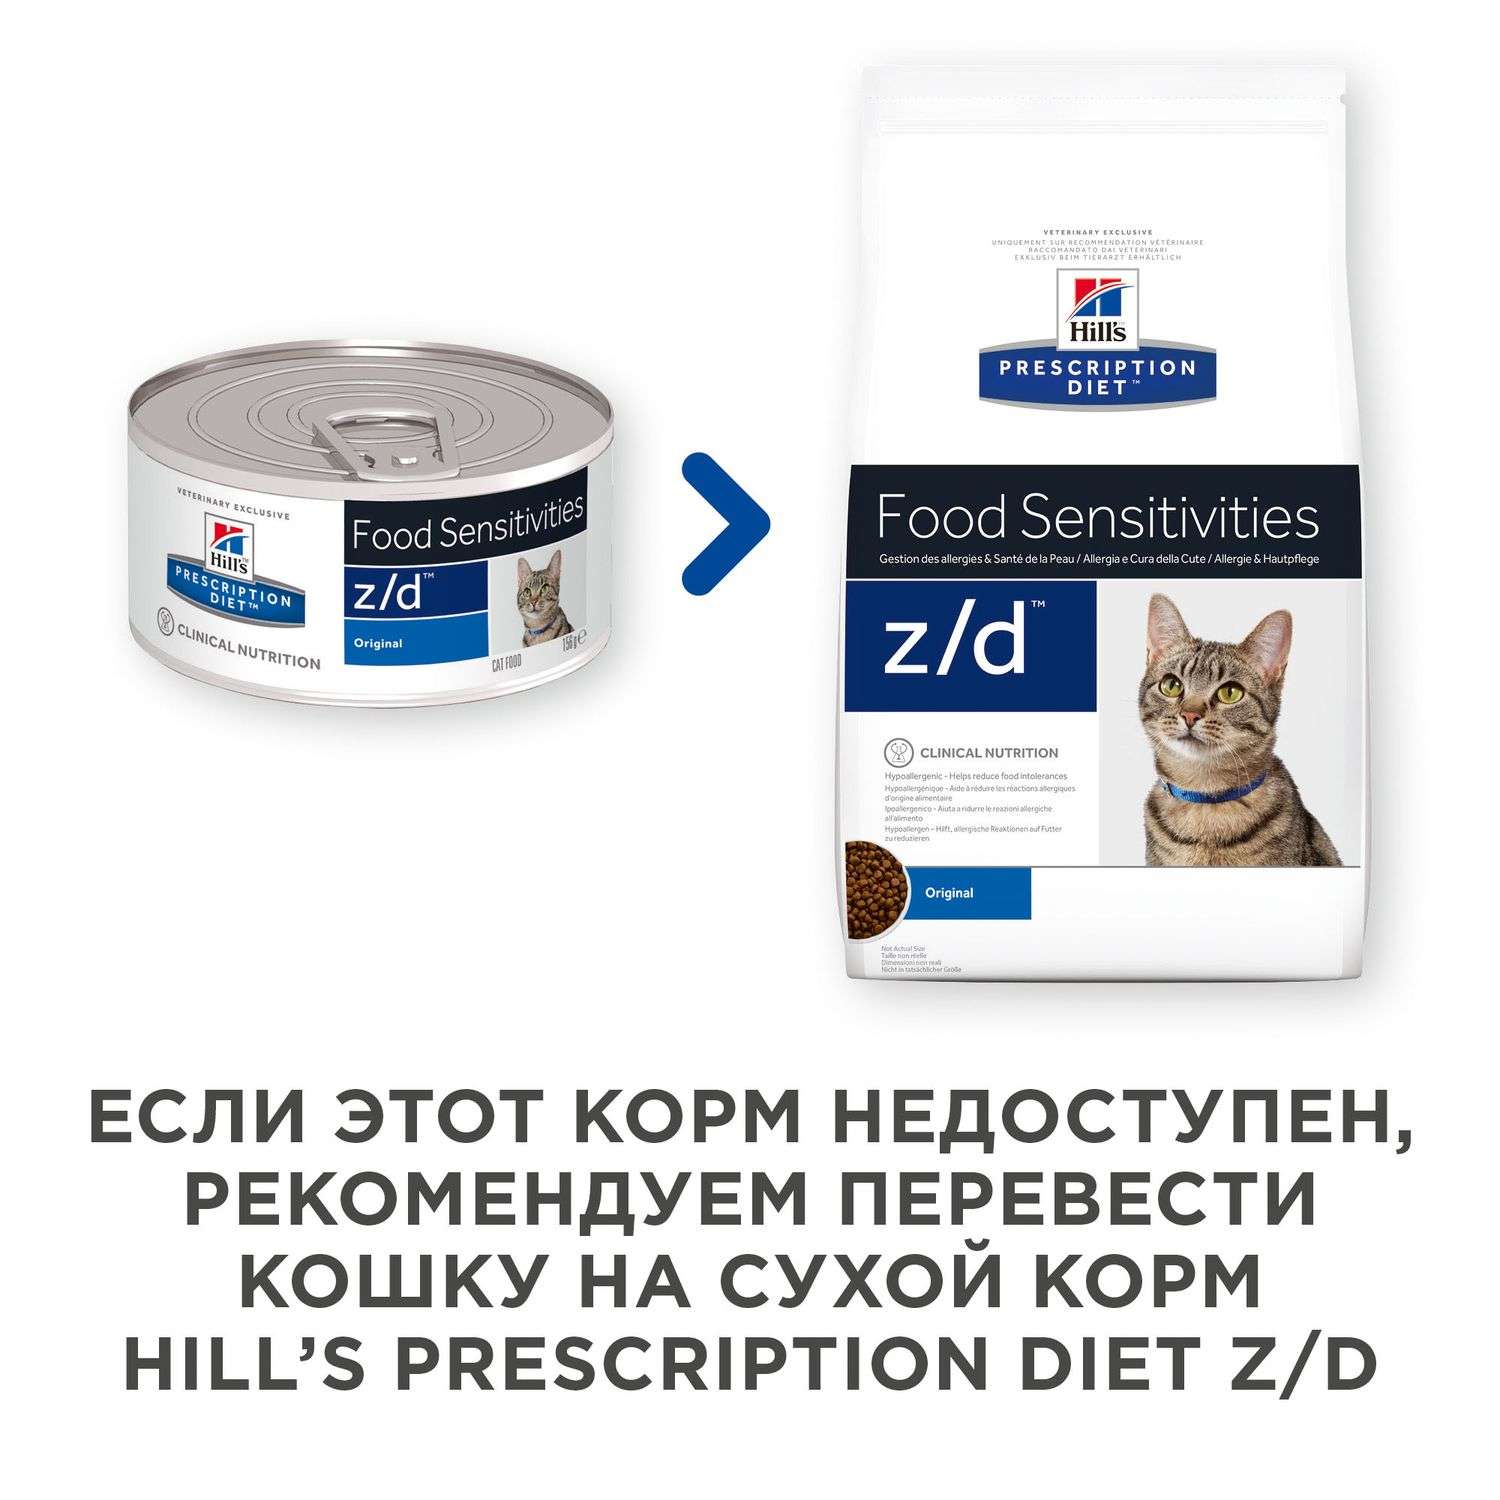 Корм для кошек HILLS 156г Prescription Diet z/d Food Sensitivities для кожи при аллергии и заболеваниях кожи консервированный - фото 4